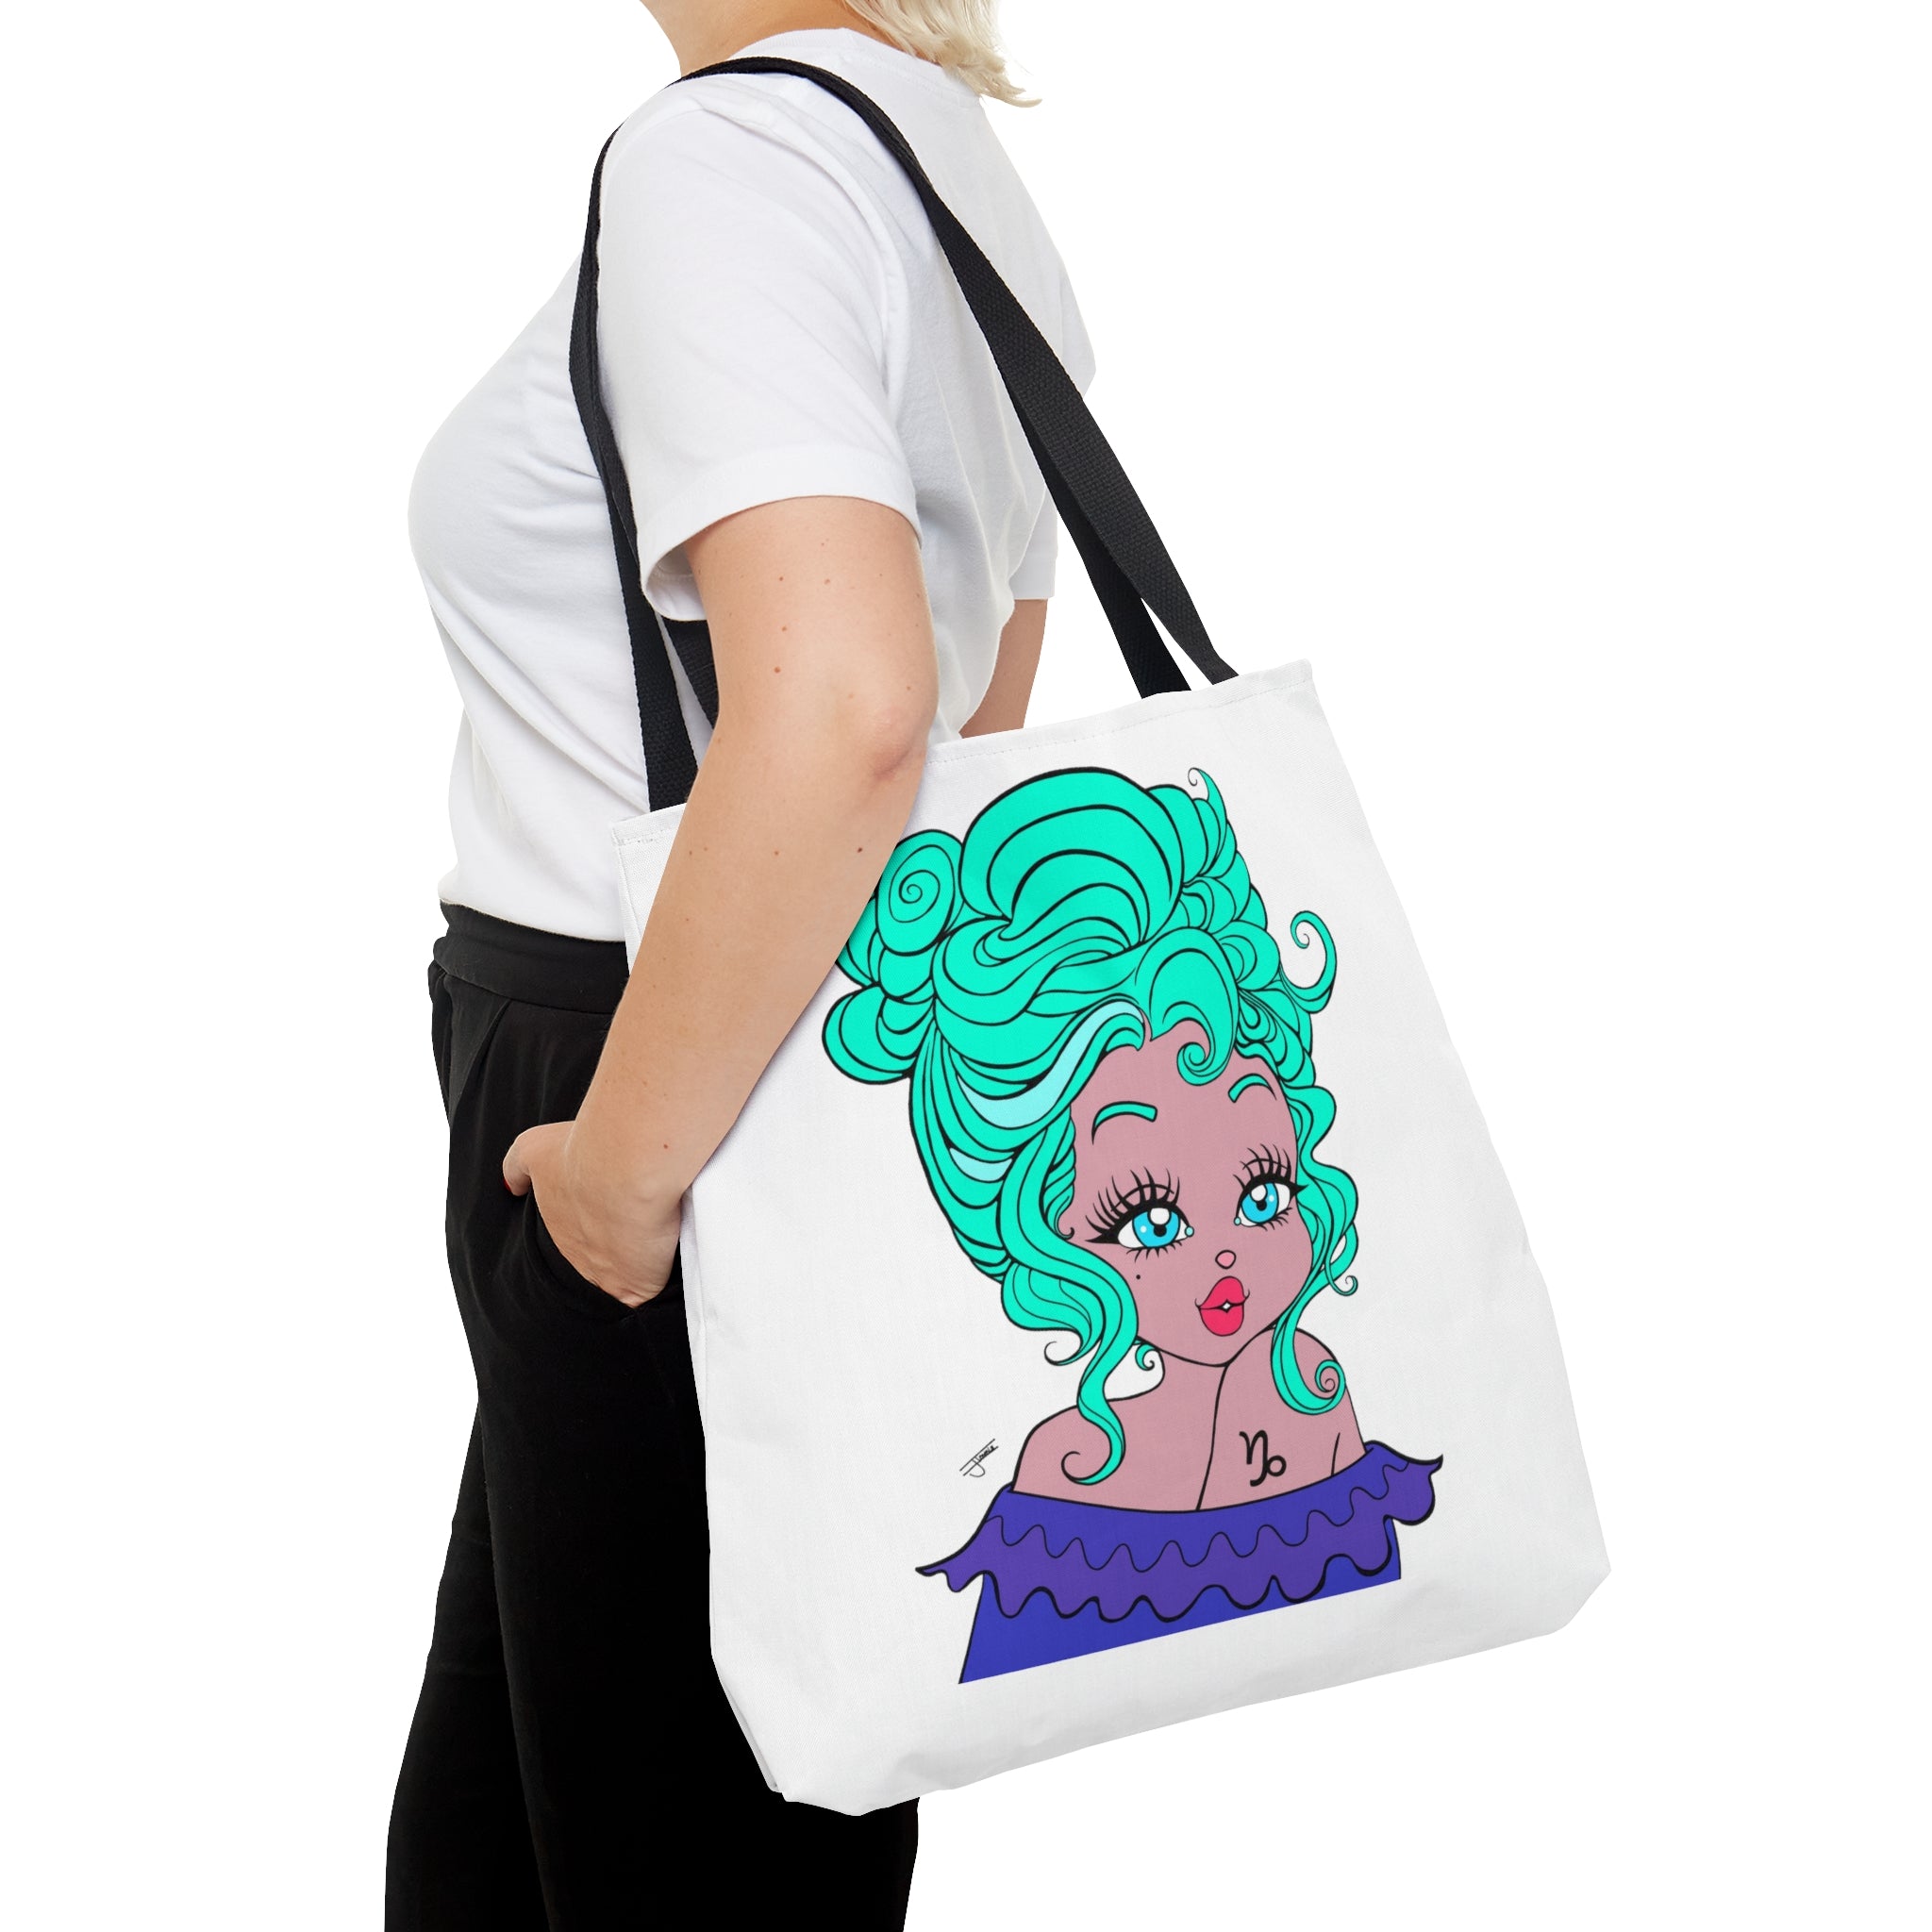 Miss Capricorn Tote Bag